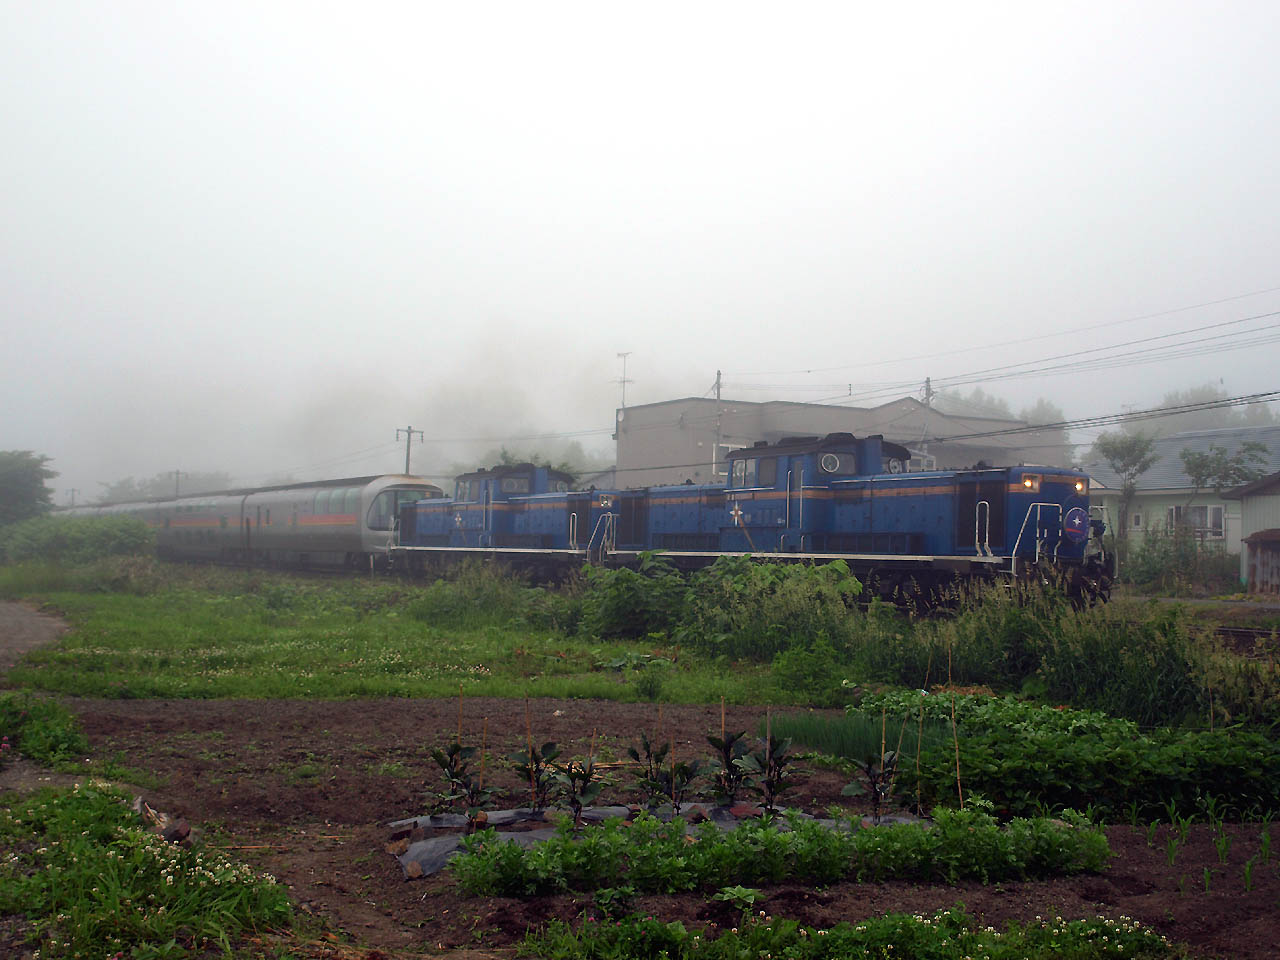 室蘭本線の洞爺駅付近で霧の中を走行する寝台特急カシオペアと重連で牽引しているDD51-1137号機